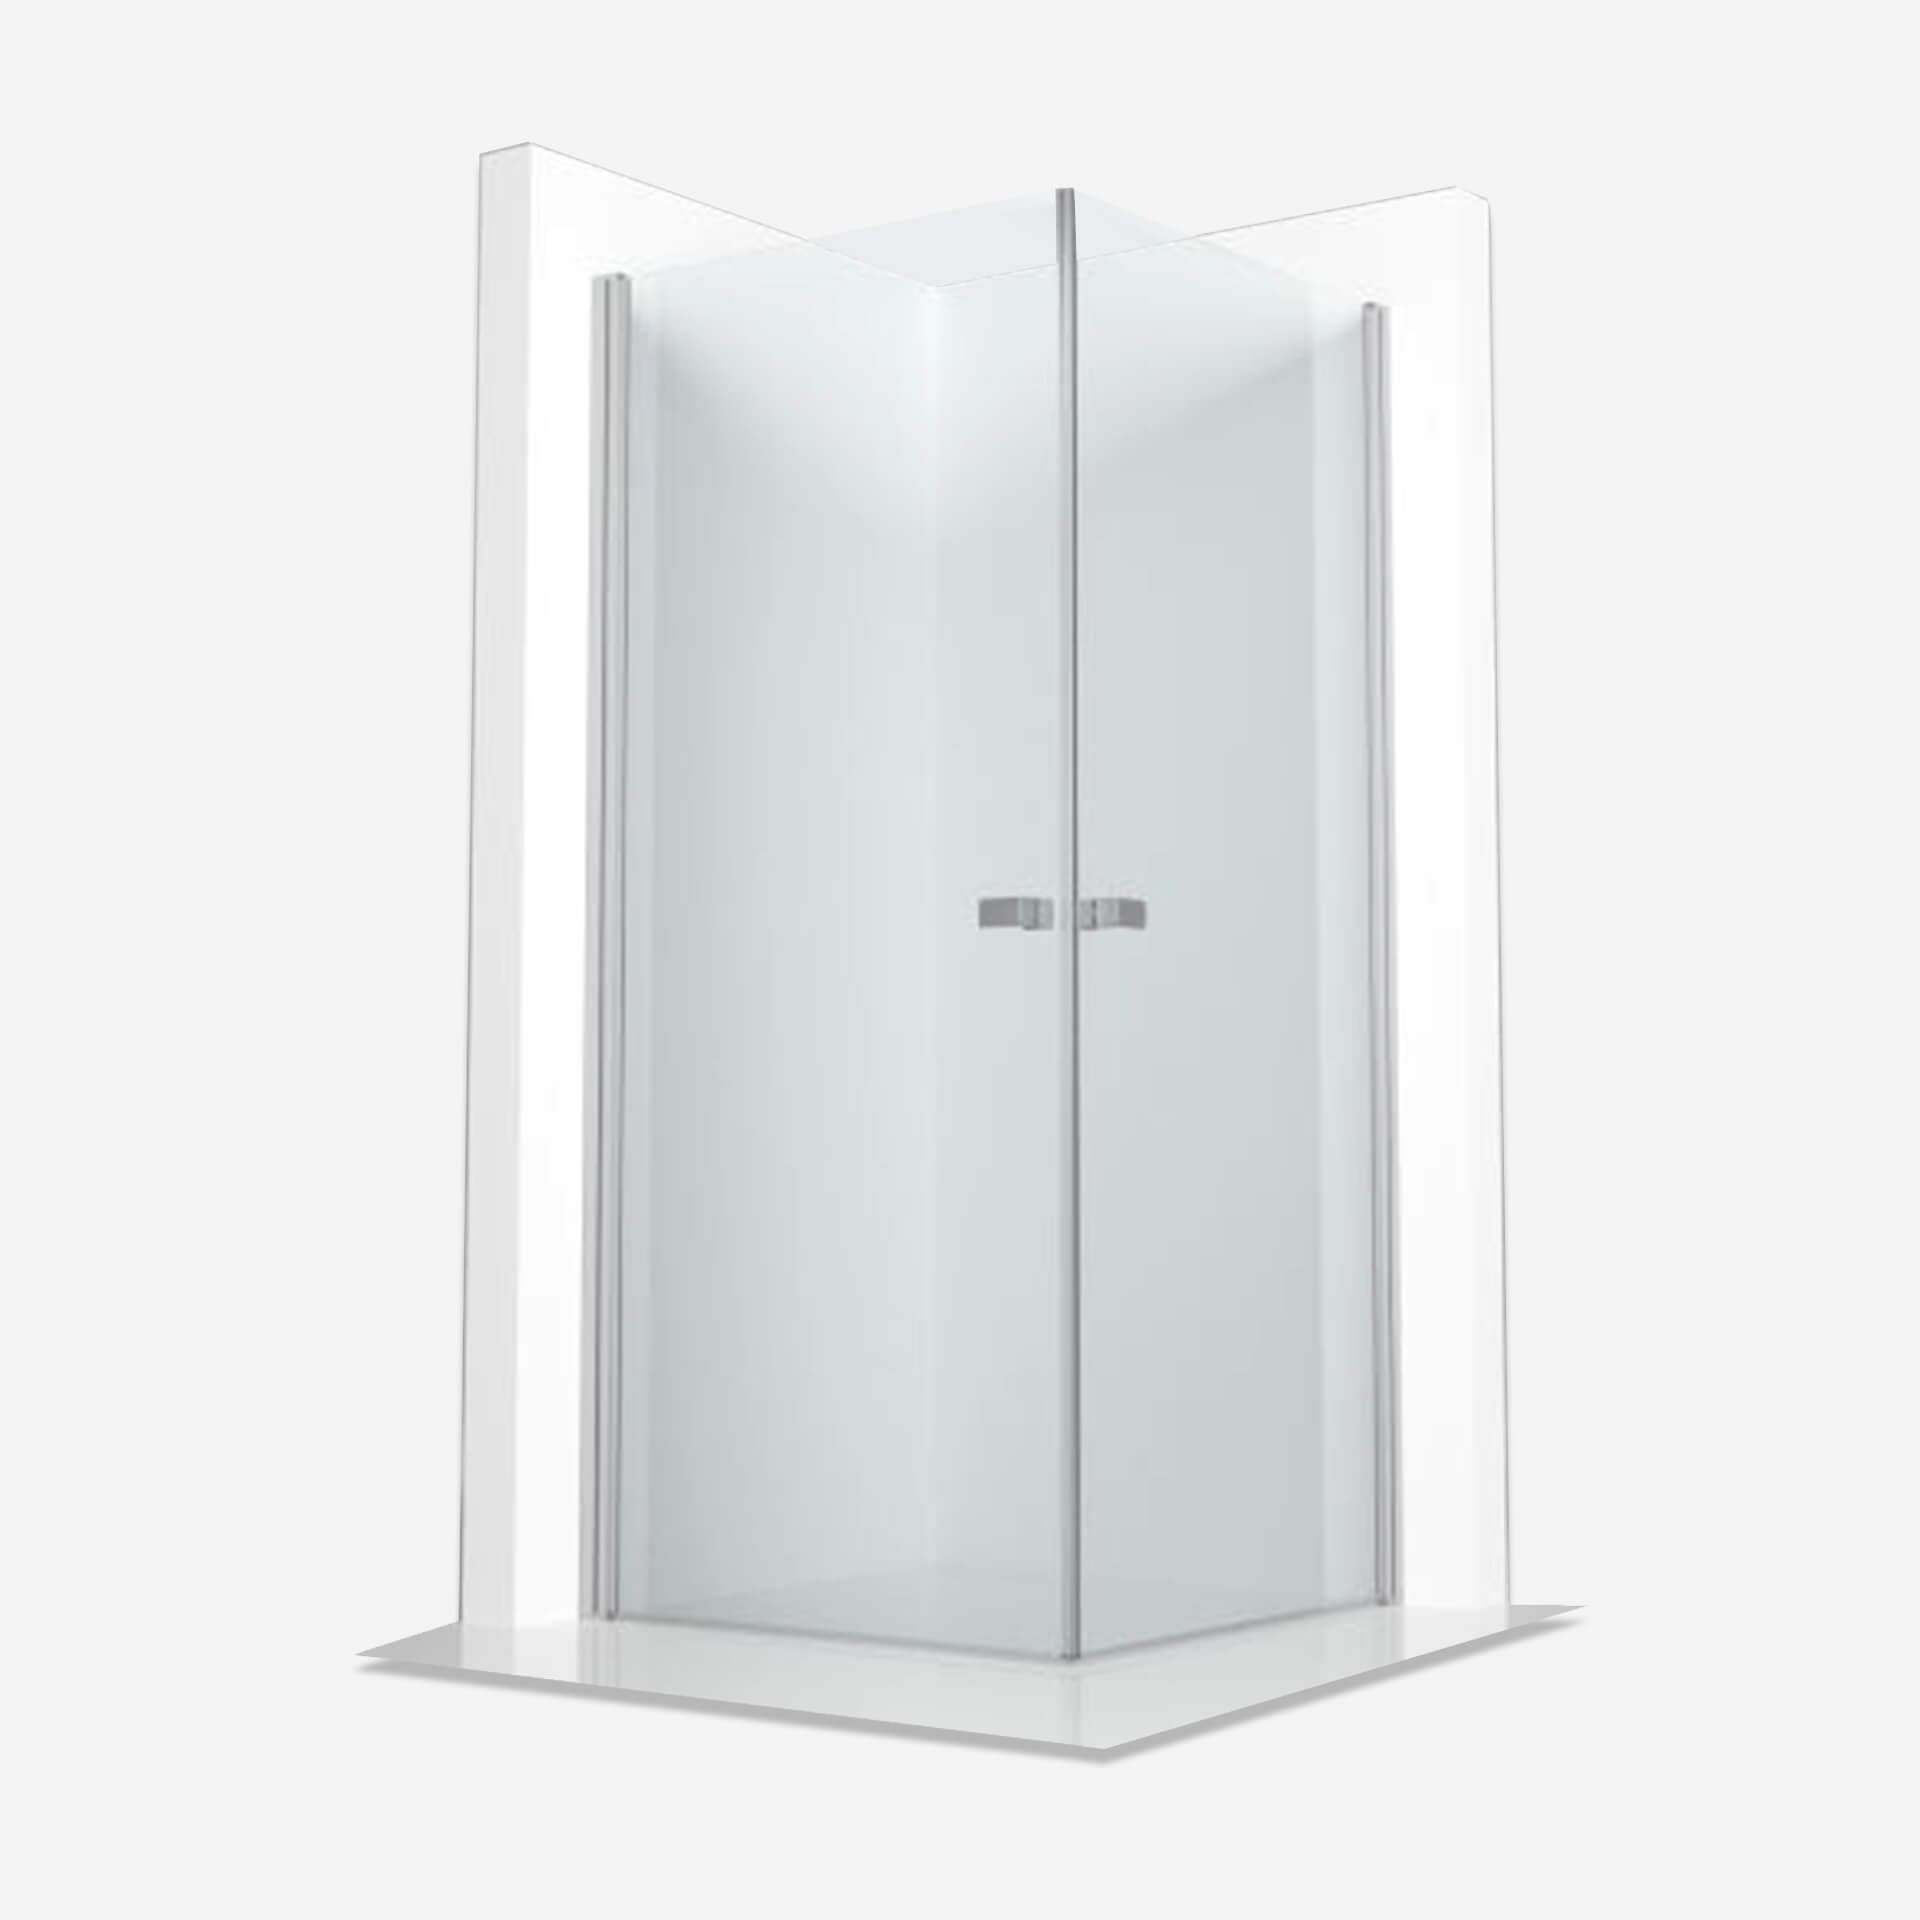 Kabina prysznicowa Aquante, kolekcj aSalto, kabina narożna z drzwiami uchylnymi